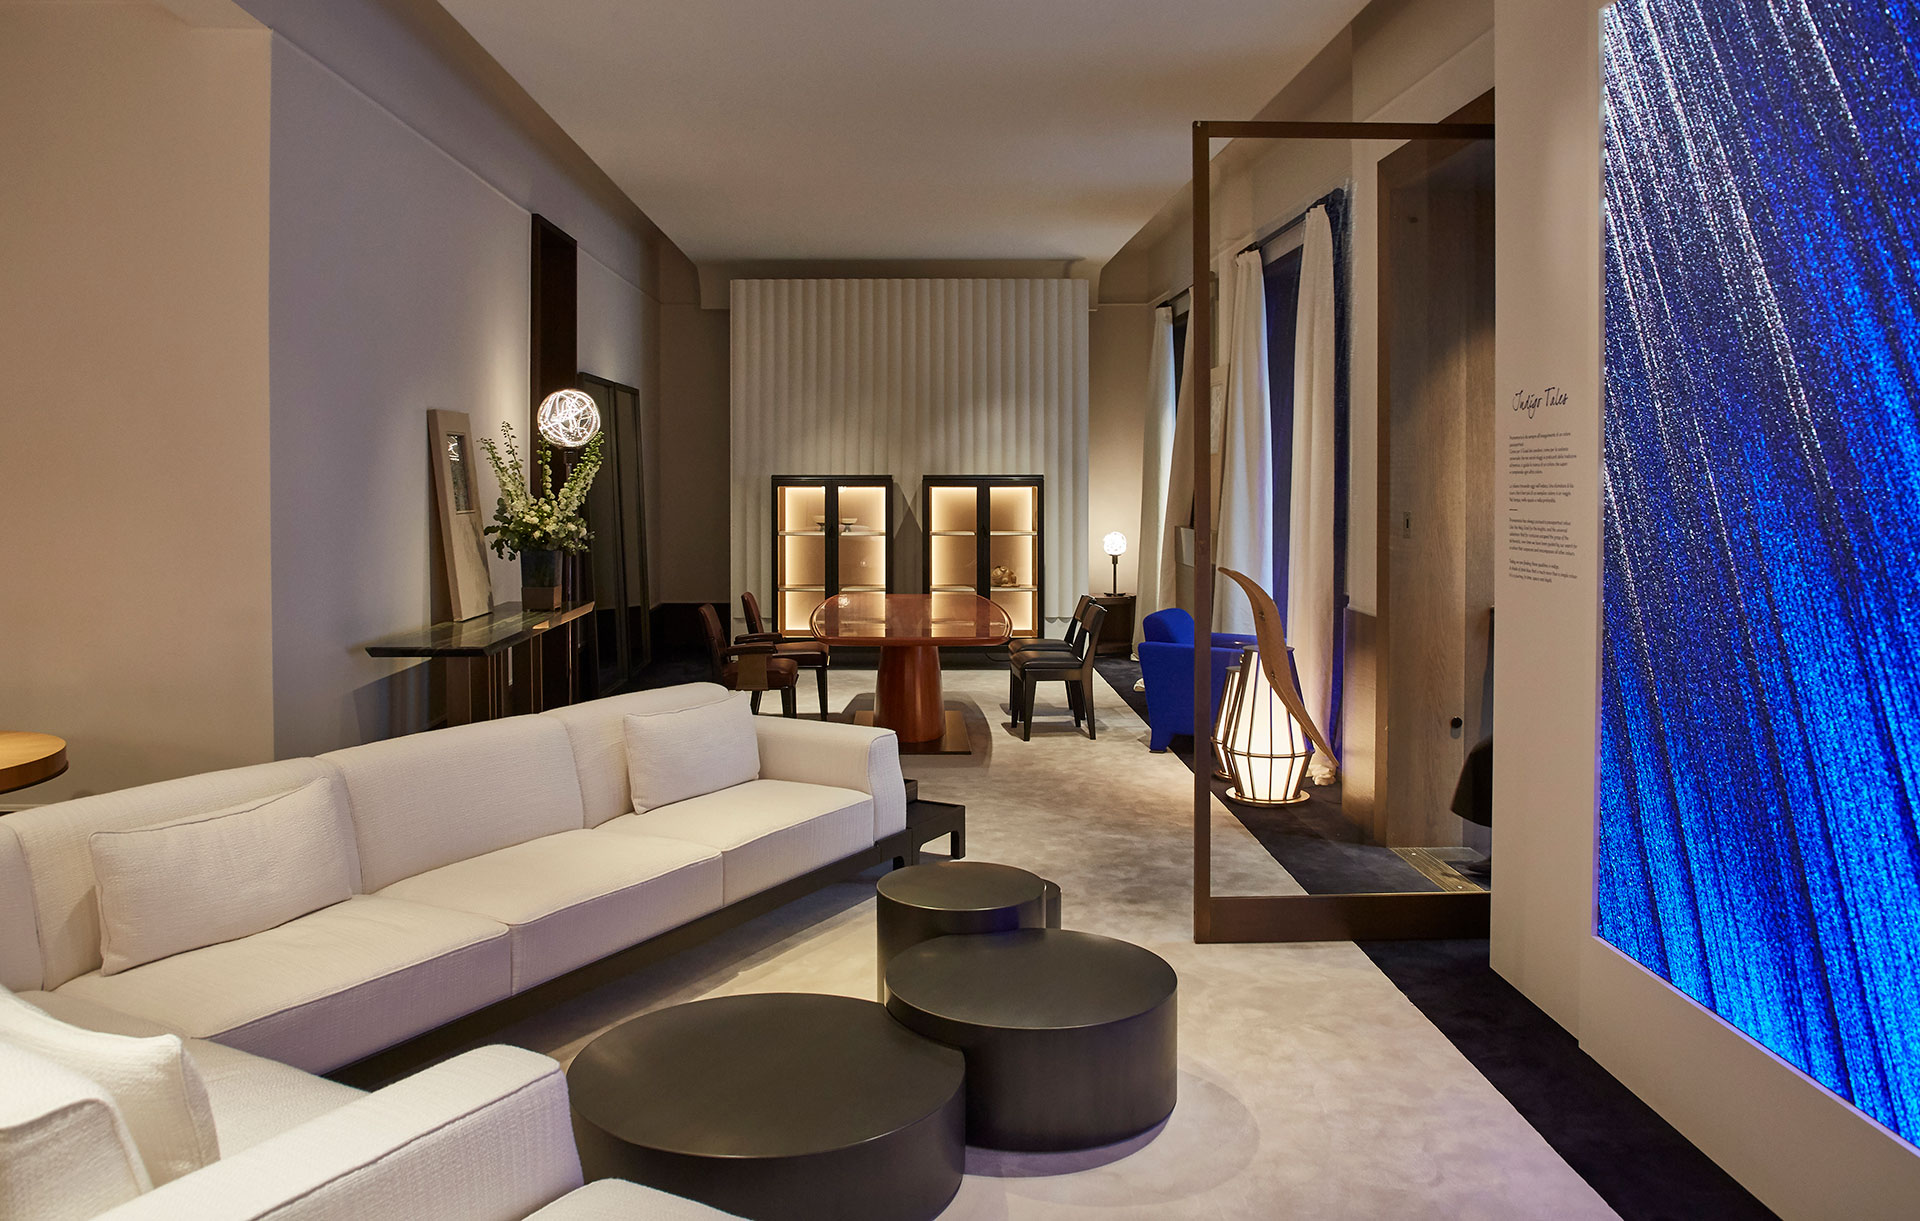 Living room Promemoria's single-brand showroom in Milan fashion district | Promemoria